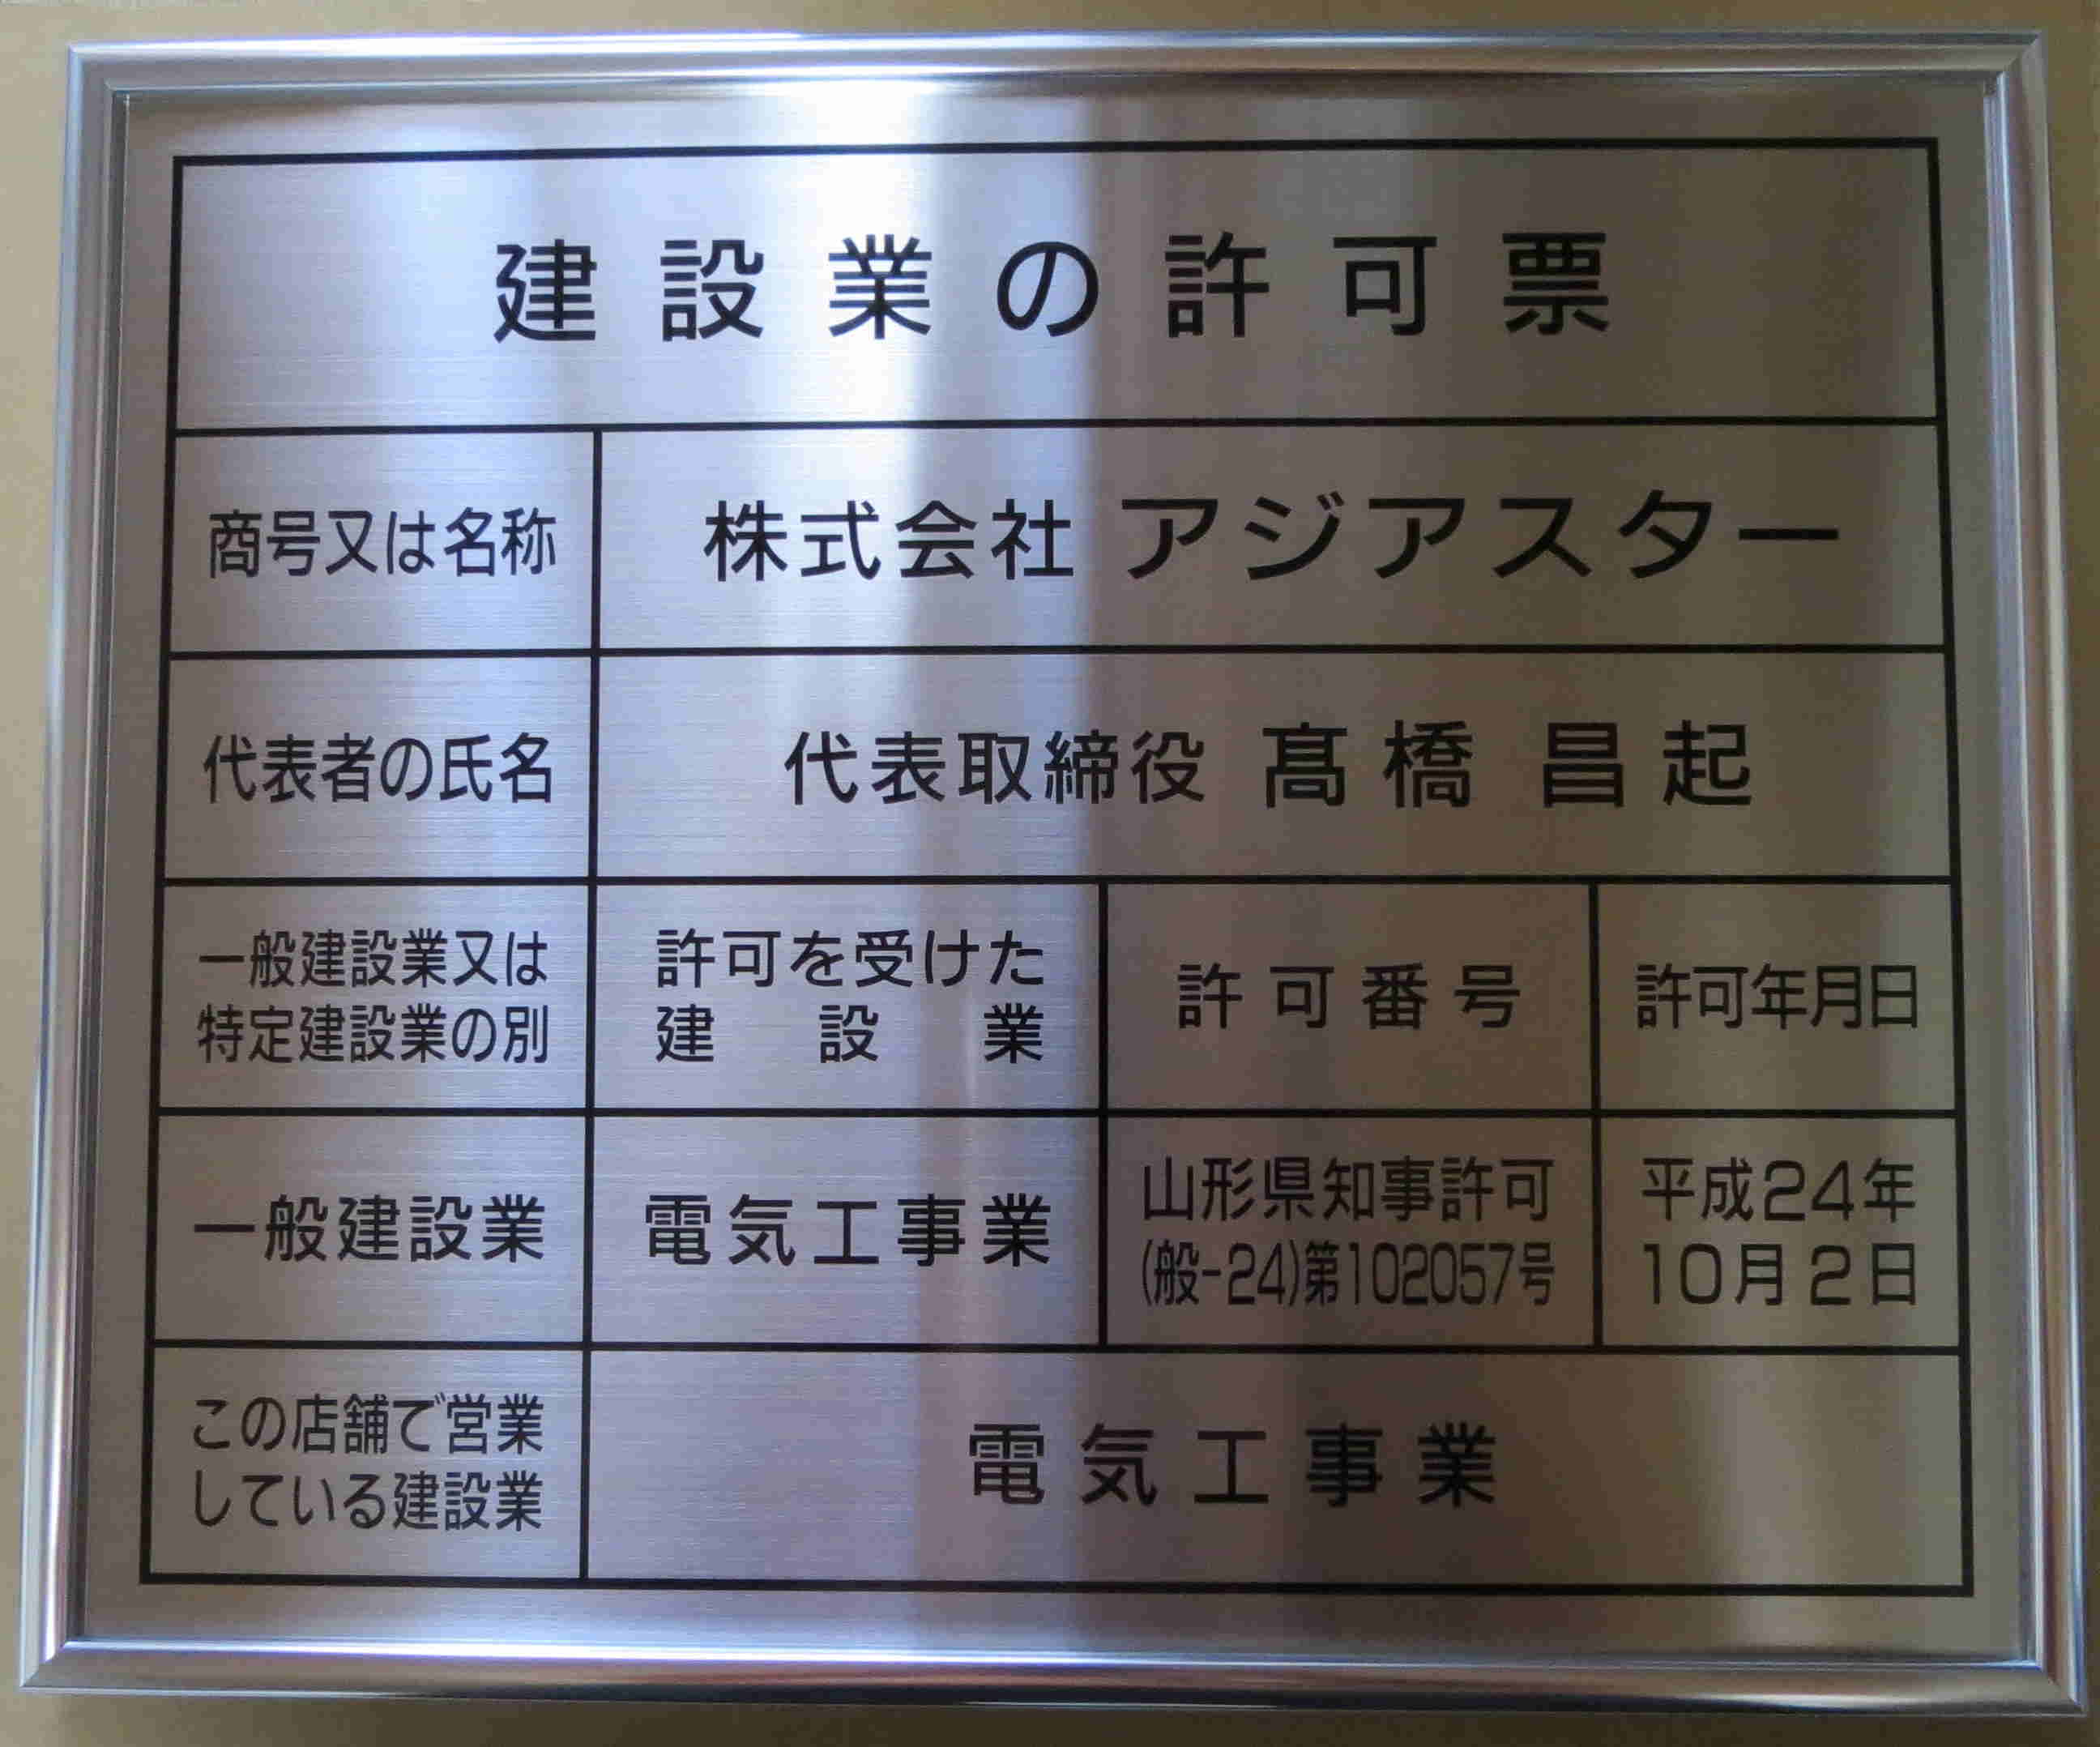 大阪の腐蝕銘板,銘板,看板,袖看板,壁面看板の制作は株式会社山崎標記